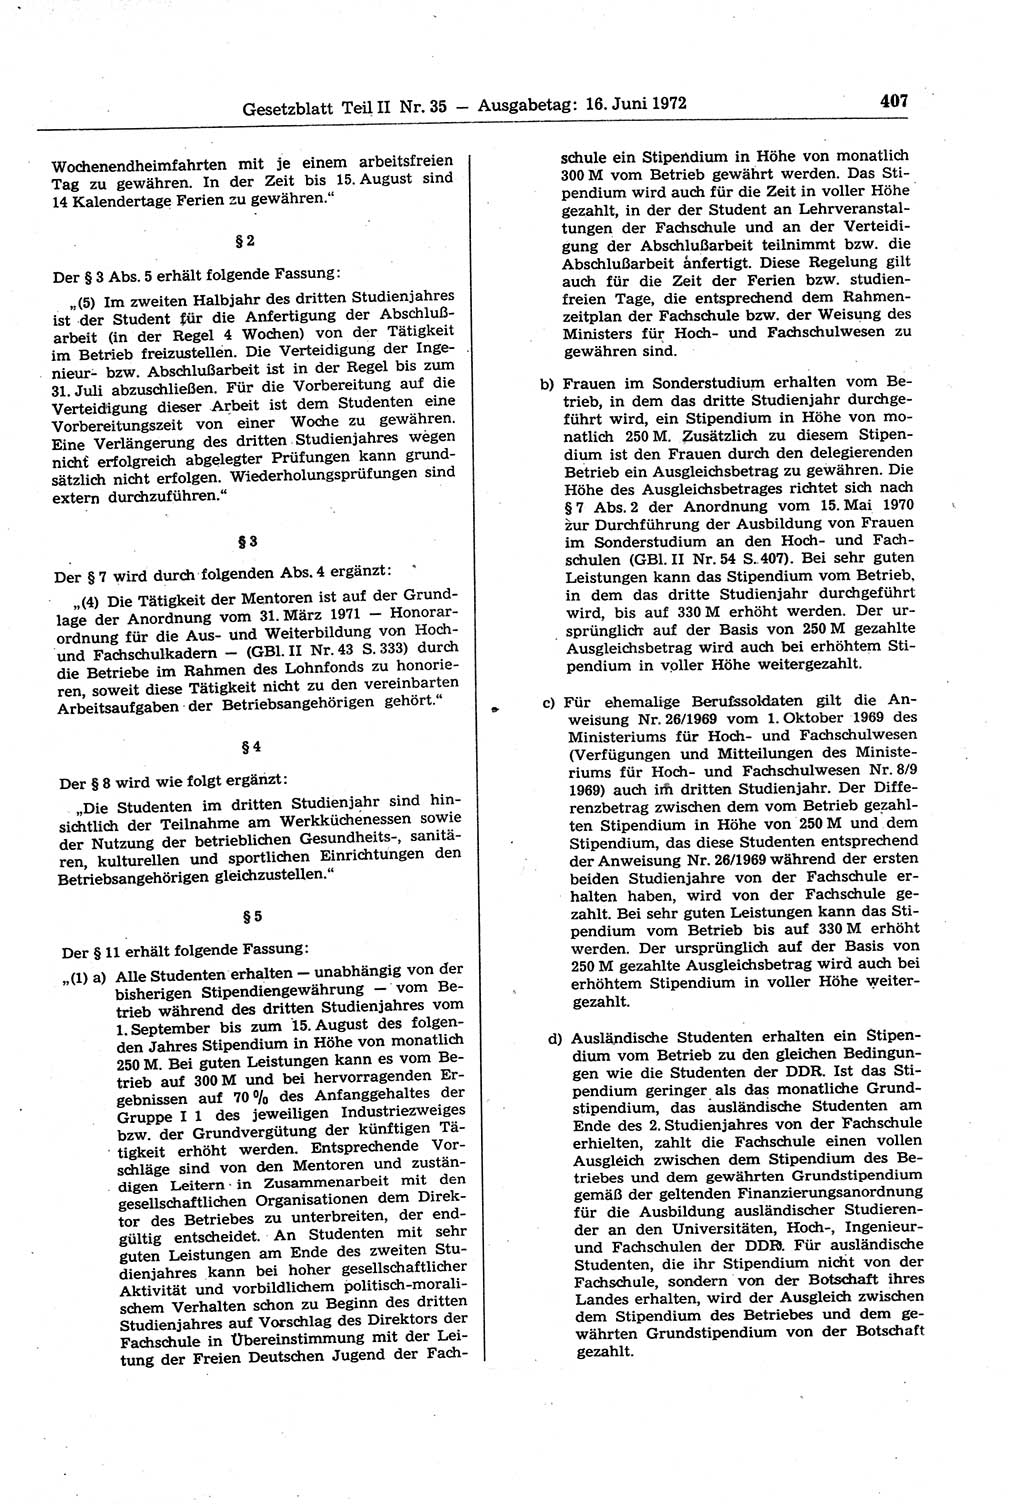 Gesetzblatt (GBl.) der Deutschen Demokratischen Republik (DDR) Teil ⅠⅠ 1972, Seite 407 (GBl. DDR ⅠⅠ 1972, S. 407)